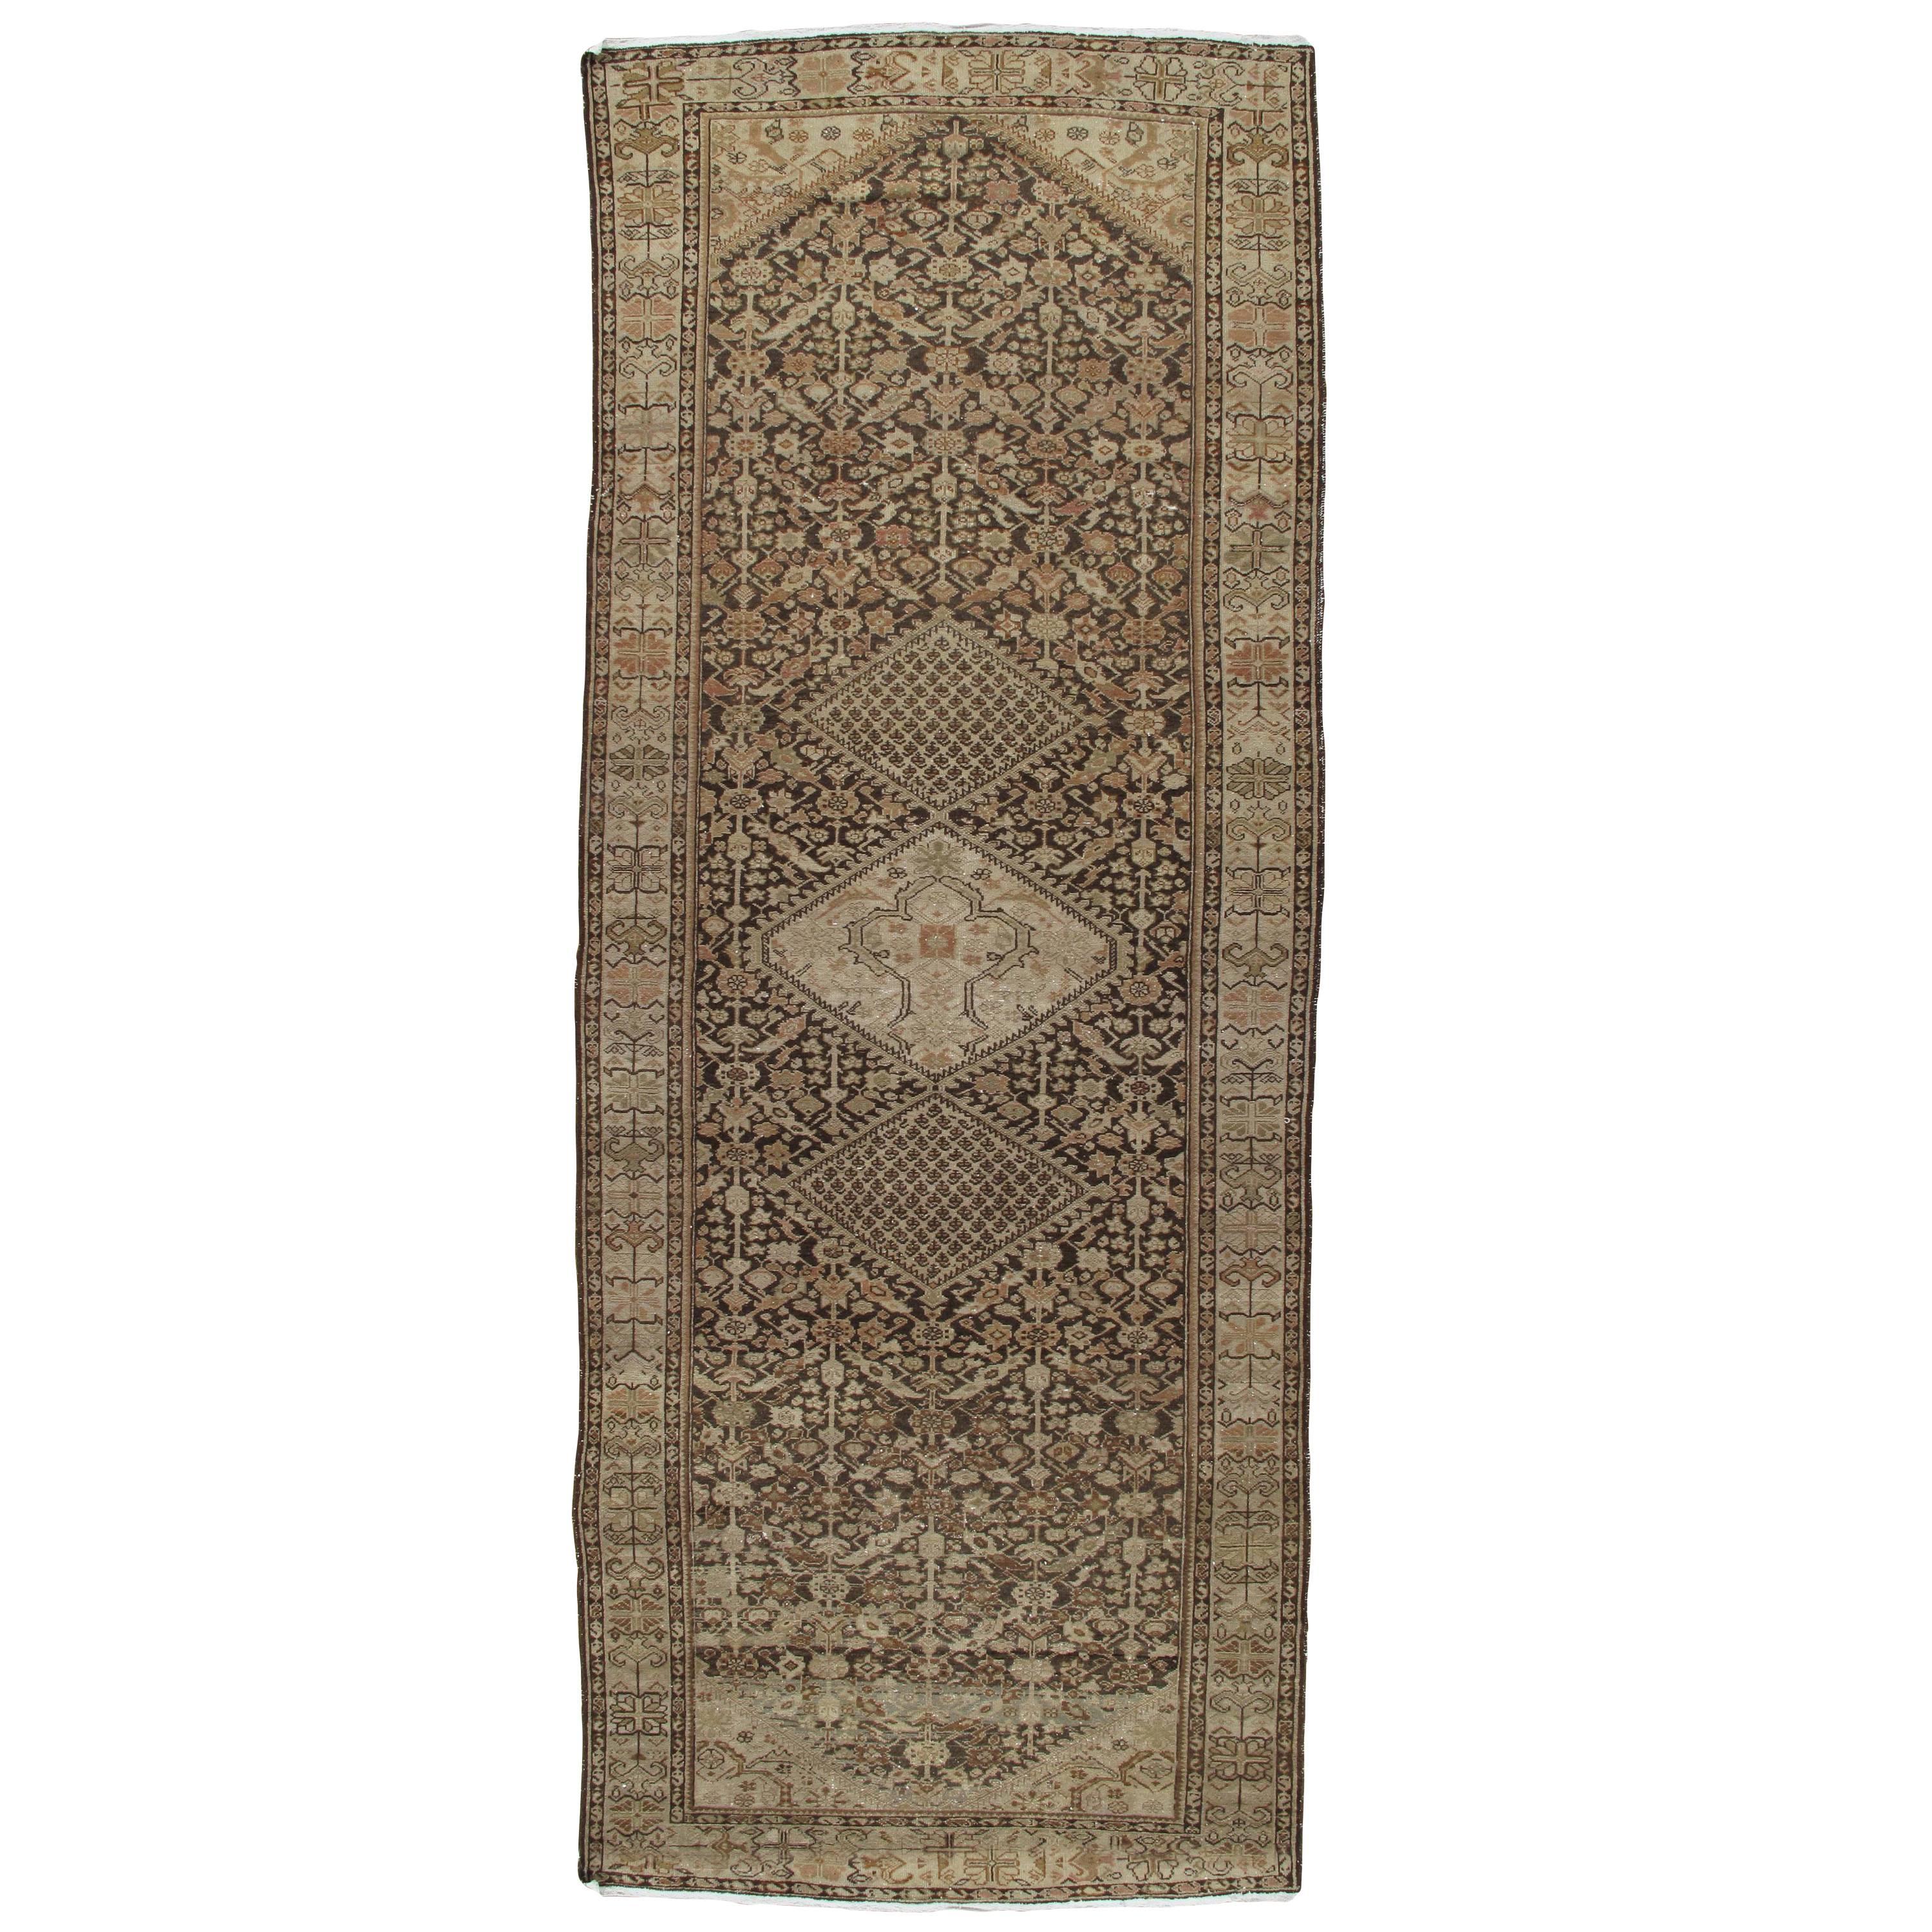 Antiker persischer Malayer-Teppich, handgefertigter orientalischer Teppich, Elfenbein, Taupe, Braun, fein